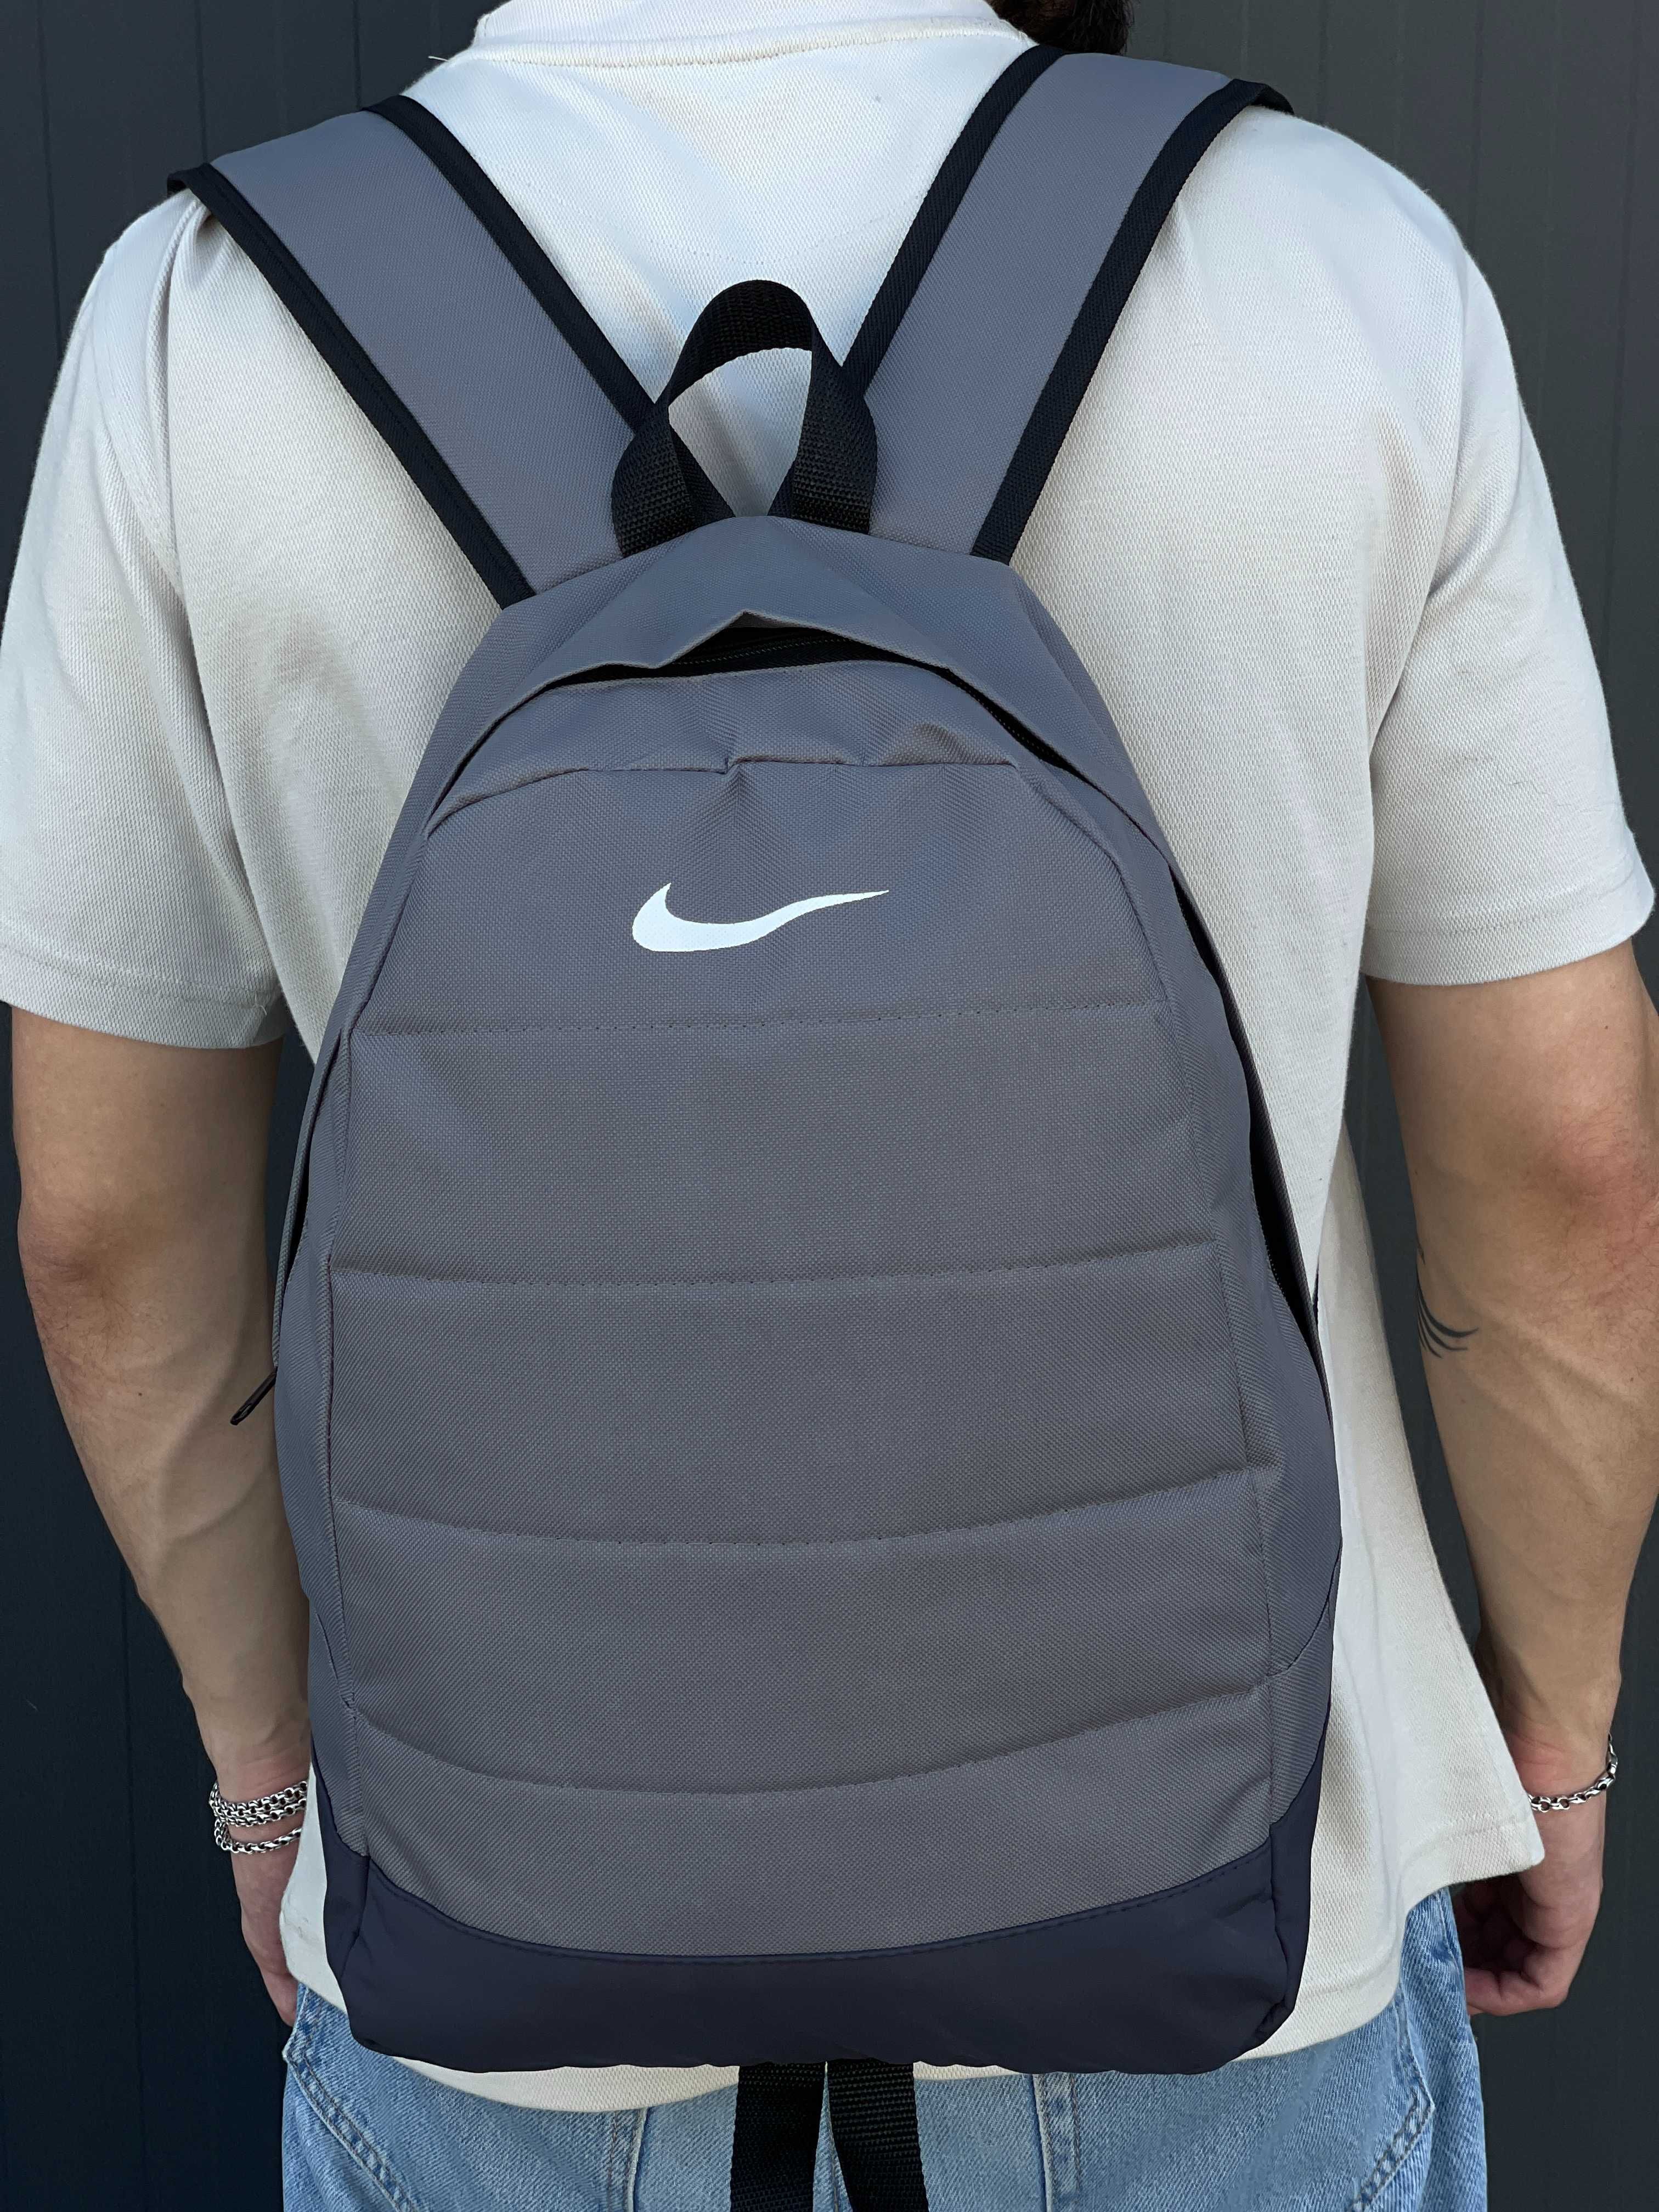 Спортивный рюкзак Nike | мужской женский портфель сумка Найк